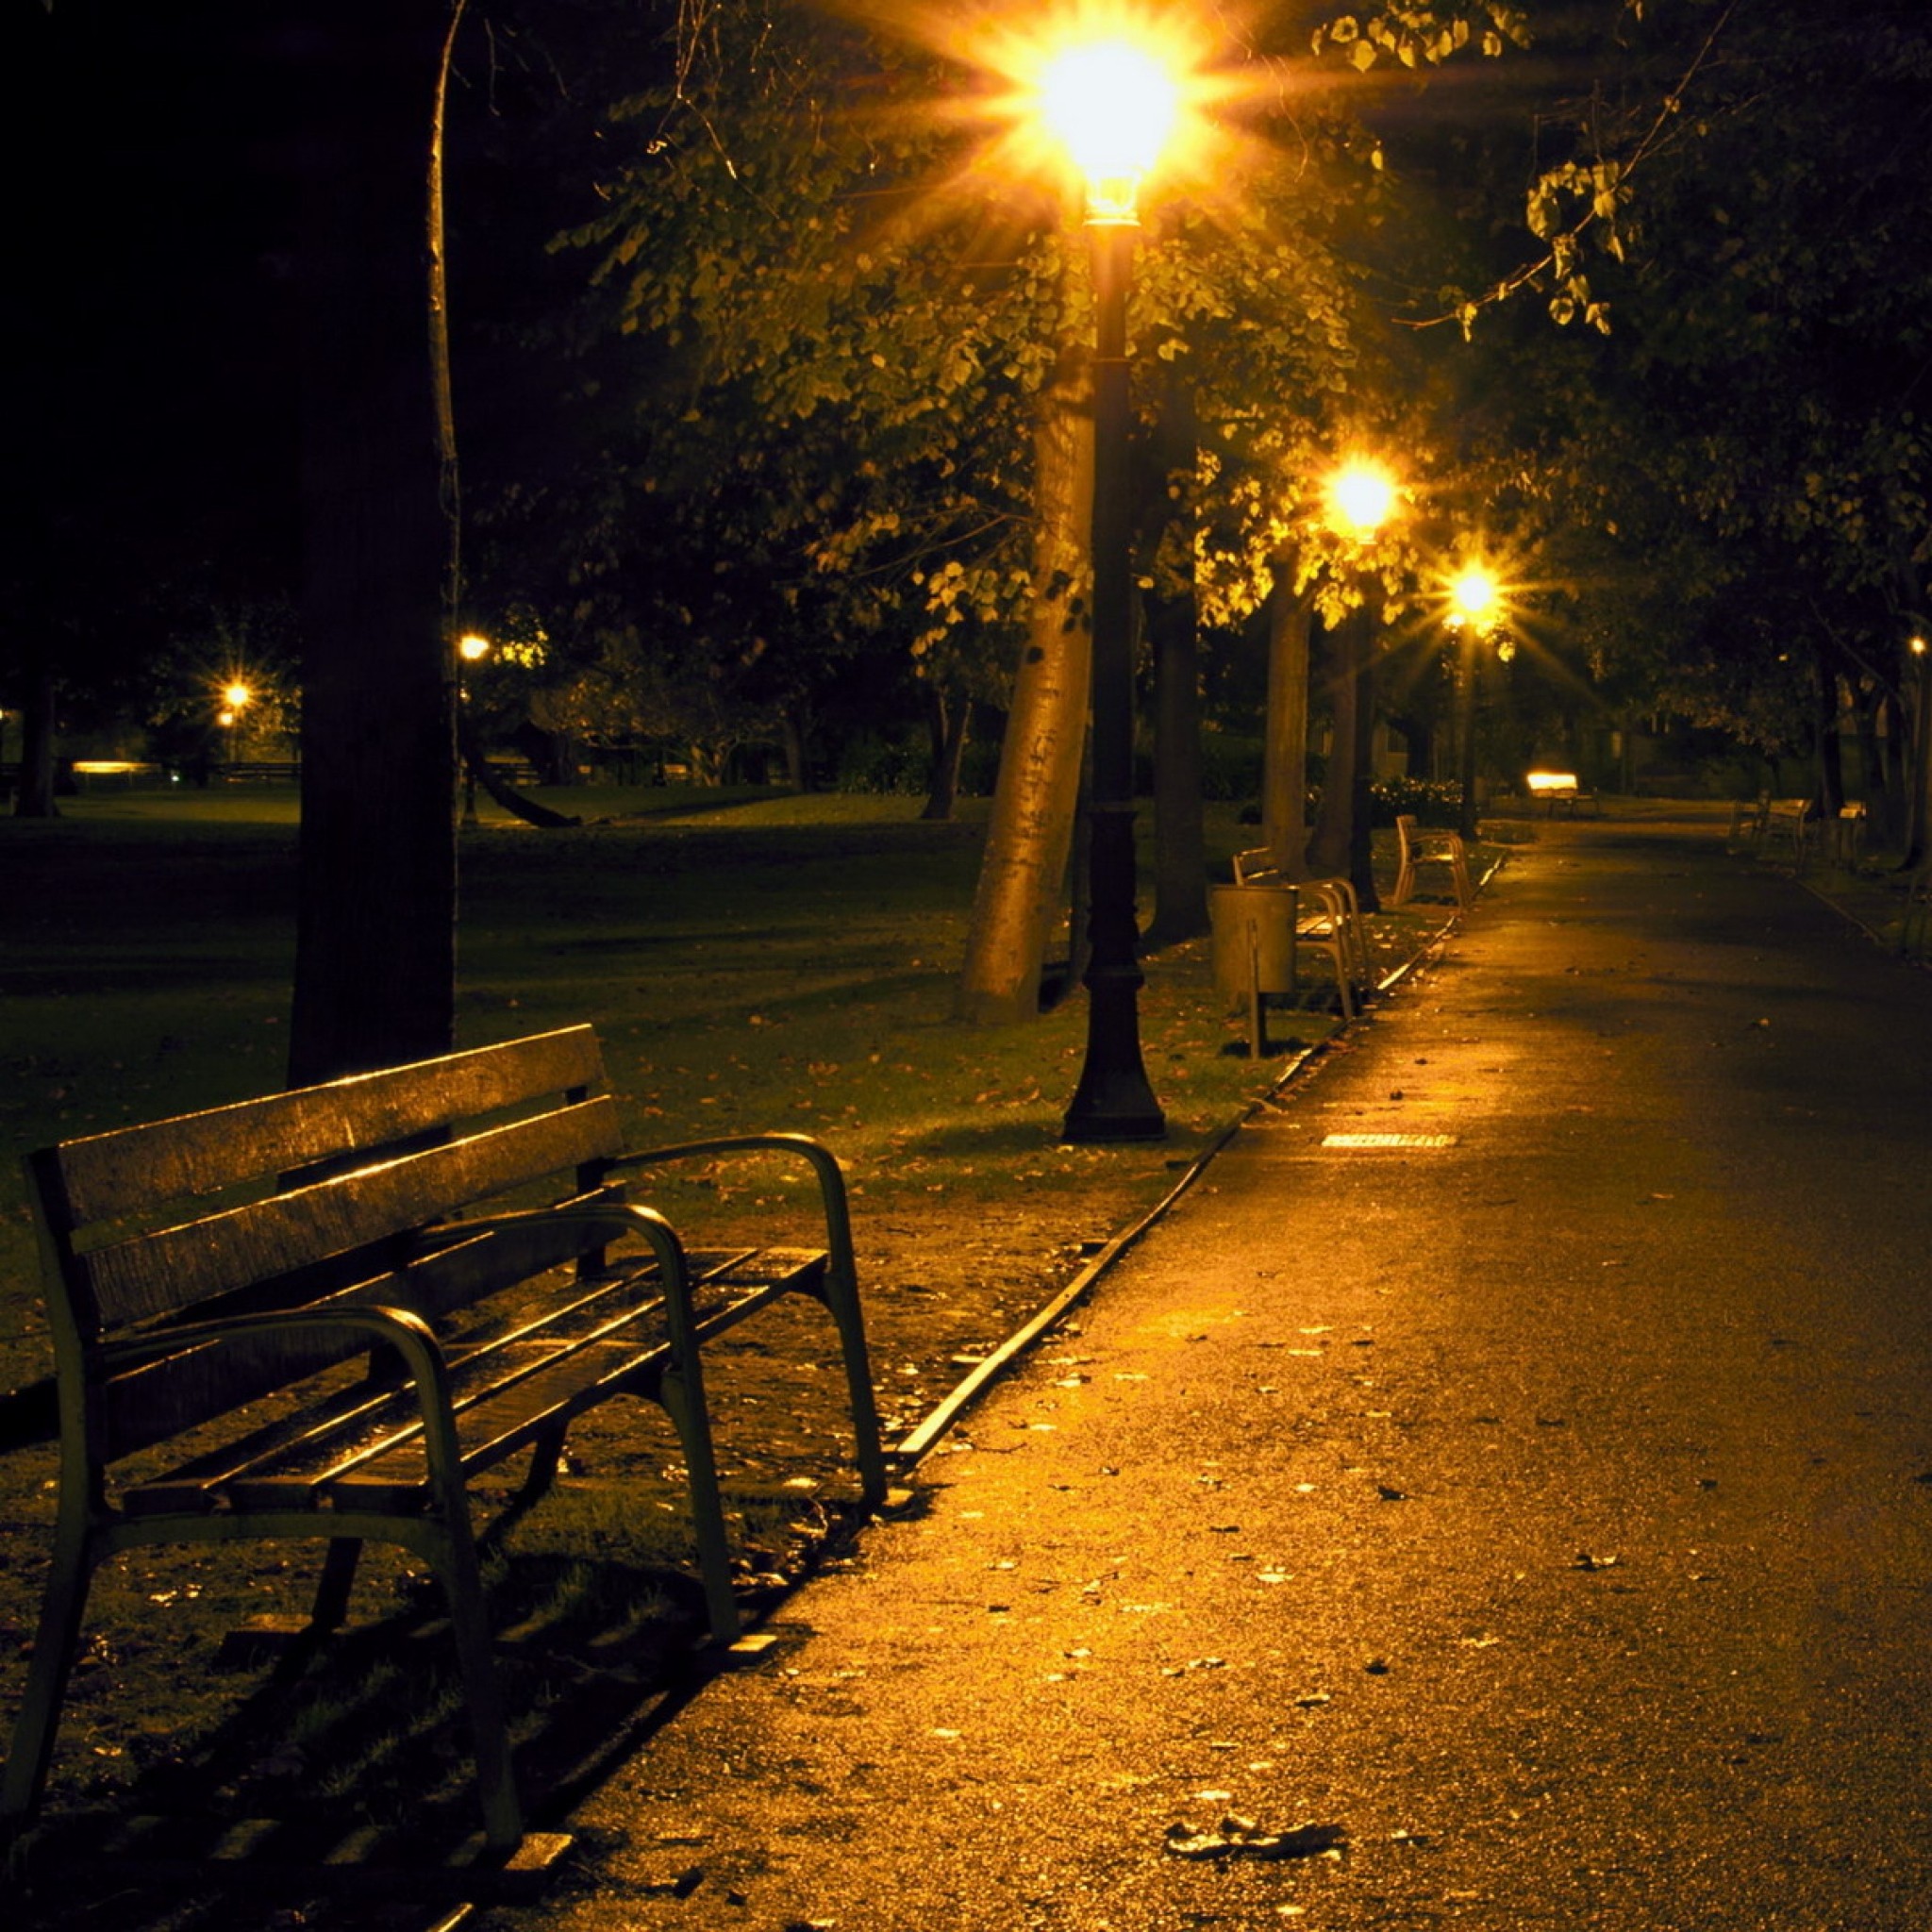 7 вечера на улице. Аллея ночью. Улица вечером. Ночная улица в парке. Парк вечером.